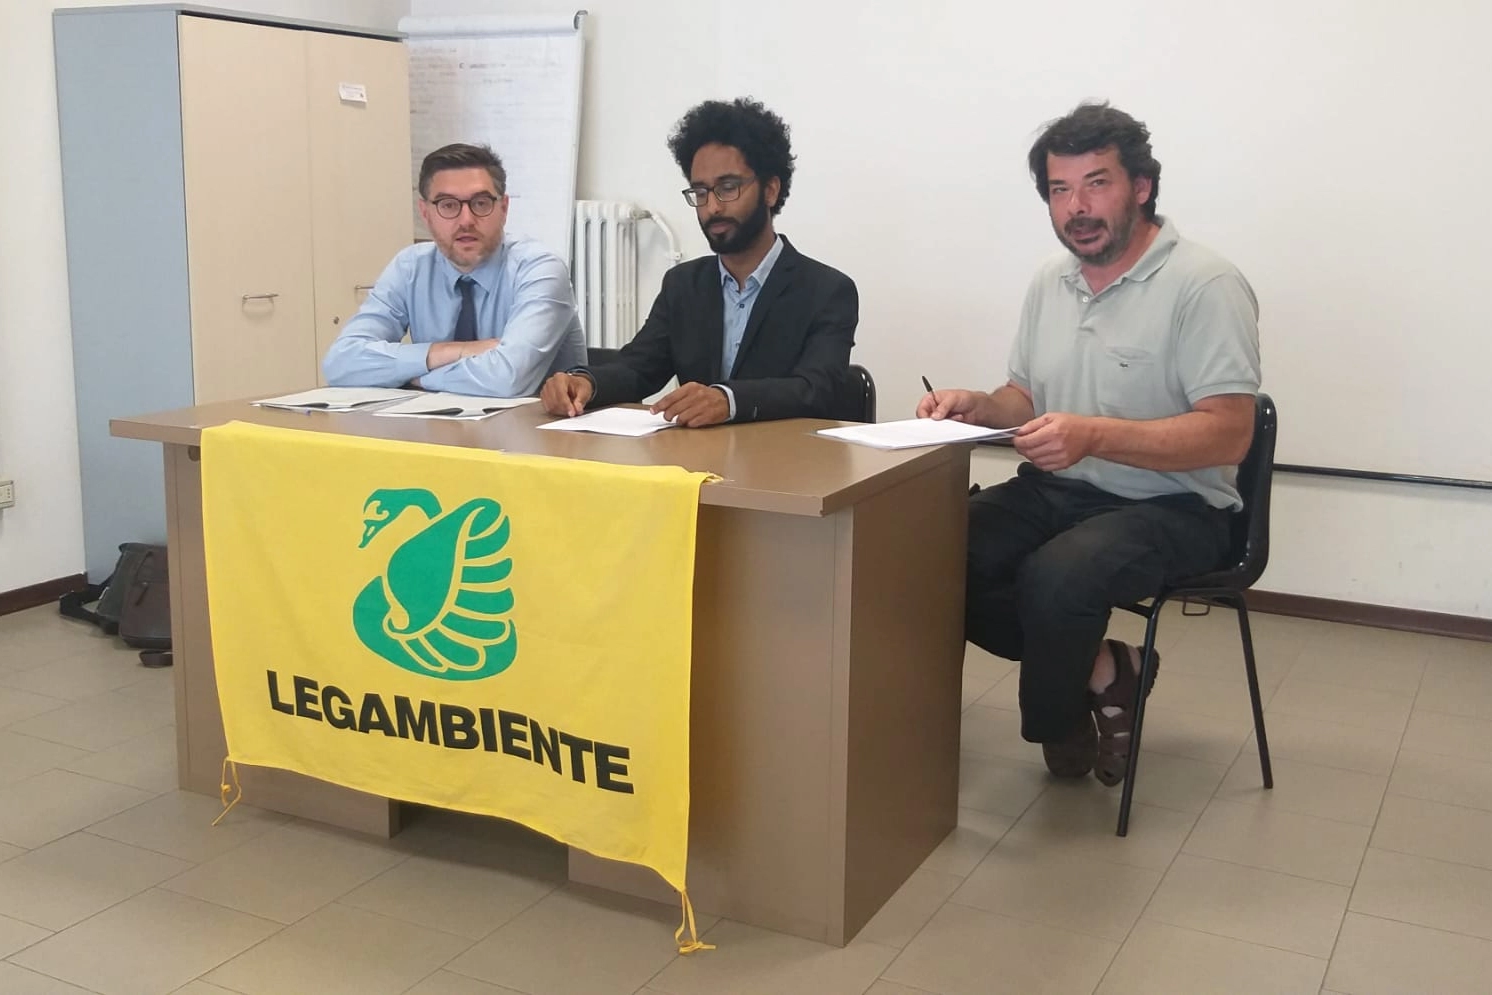 Gruppo di acquisto Legambiente per i pannelli fotovoltaici: Stefano Vescovi, Bokar Diop e Massimo Becchi